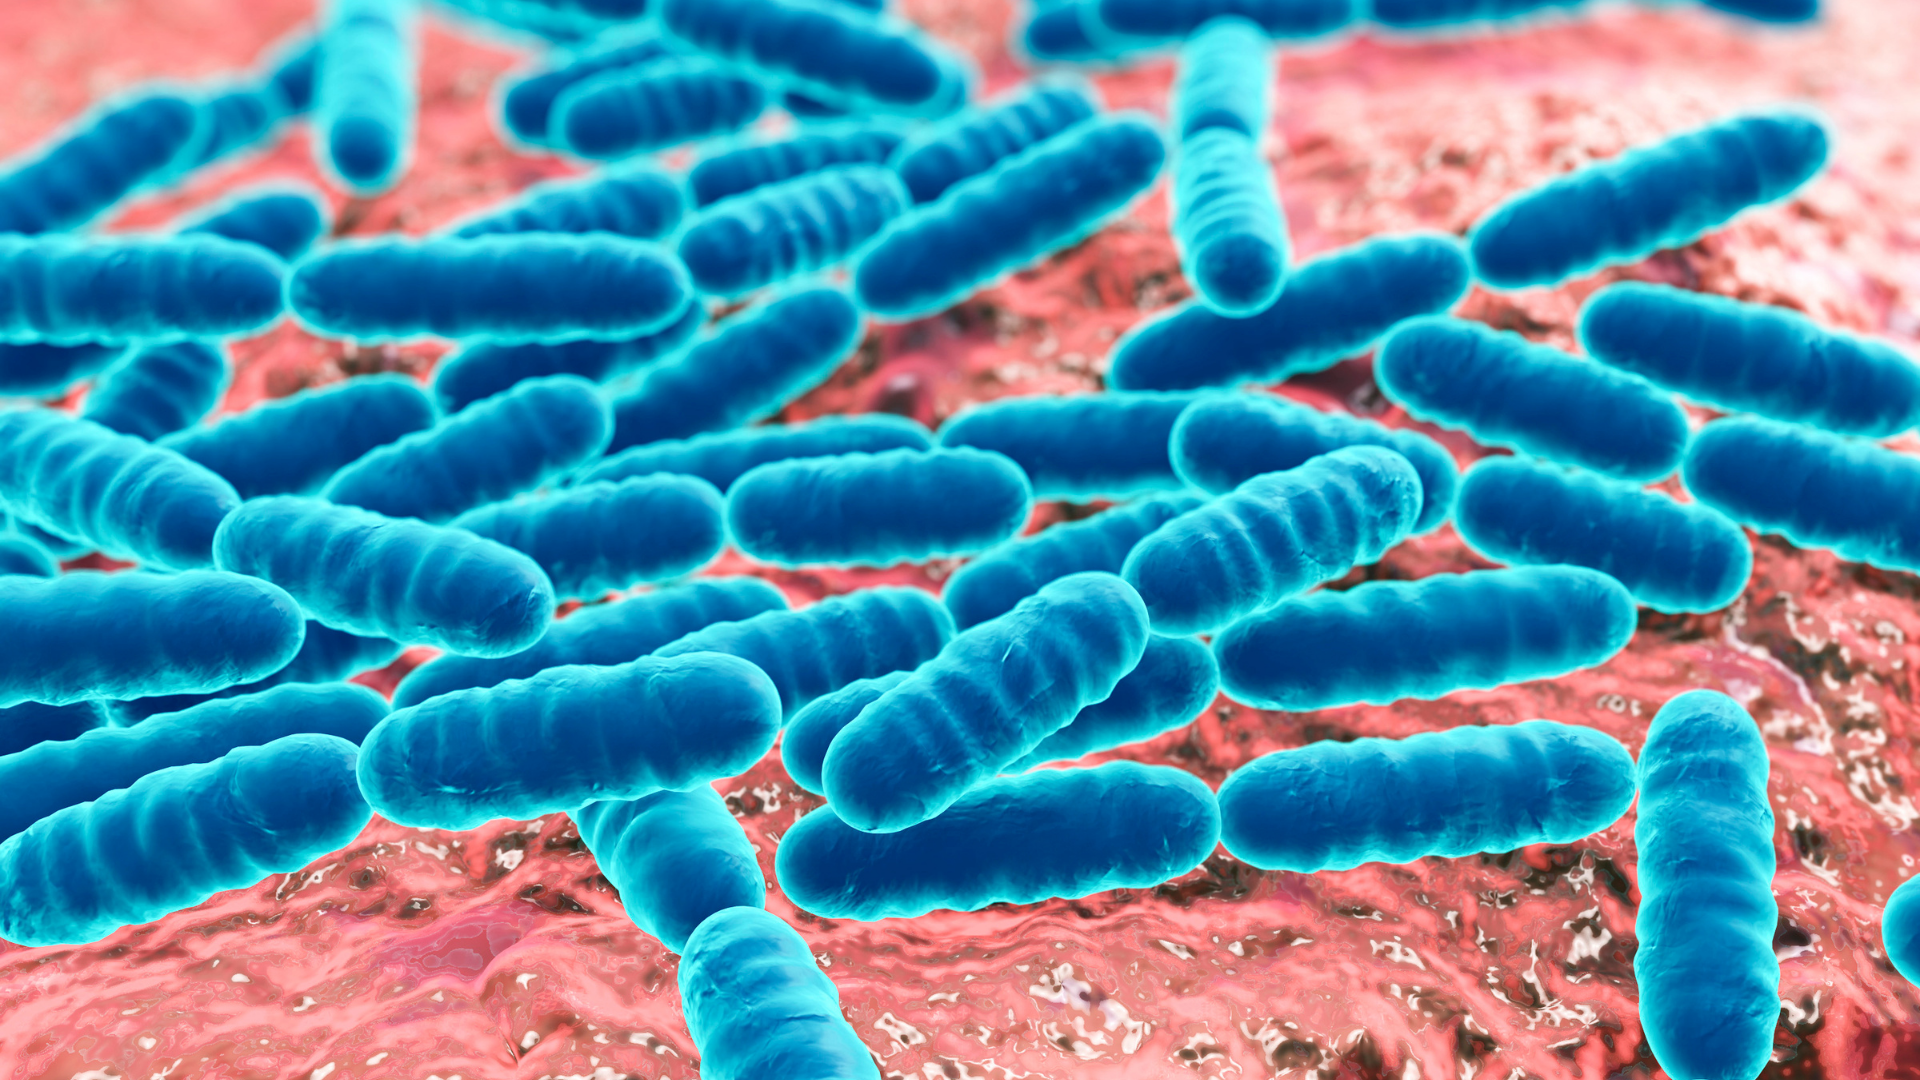 Probiotics microscopic view